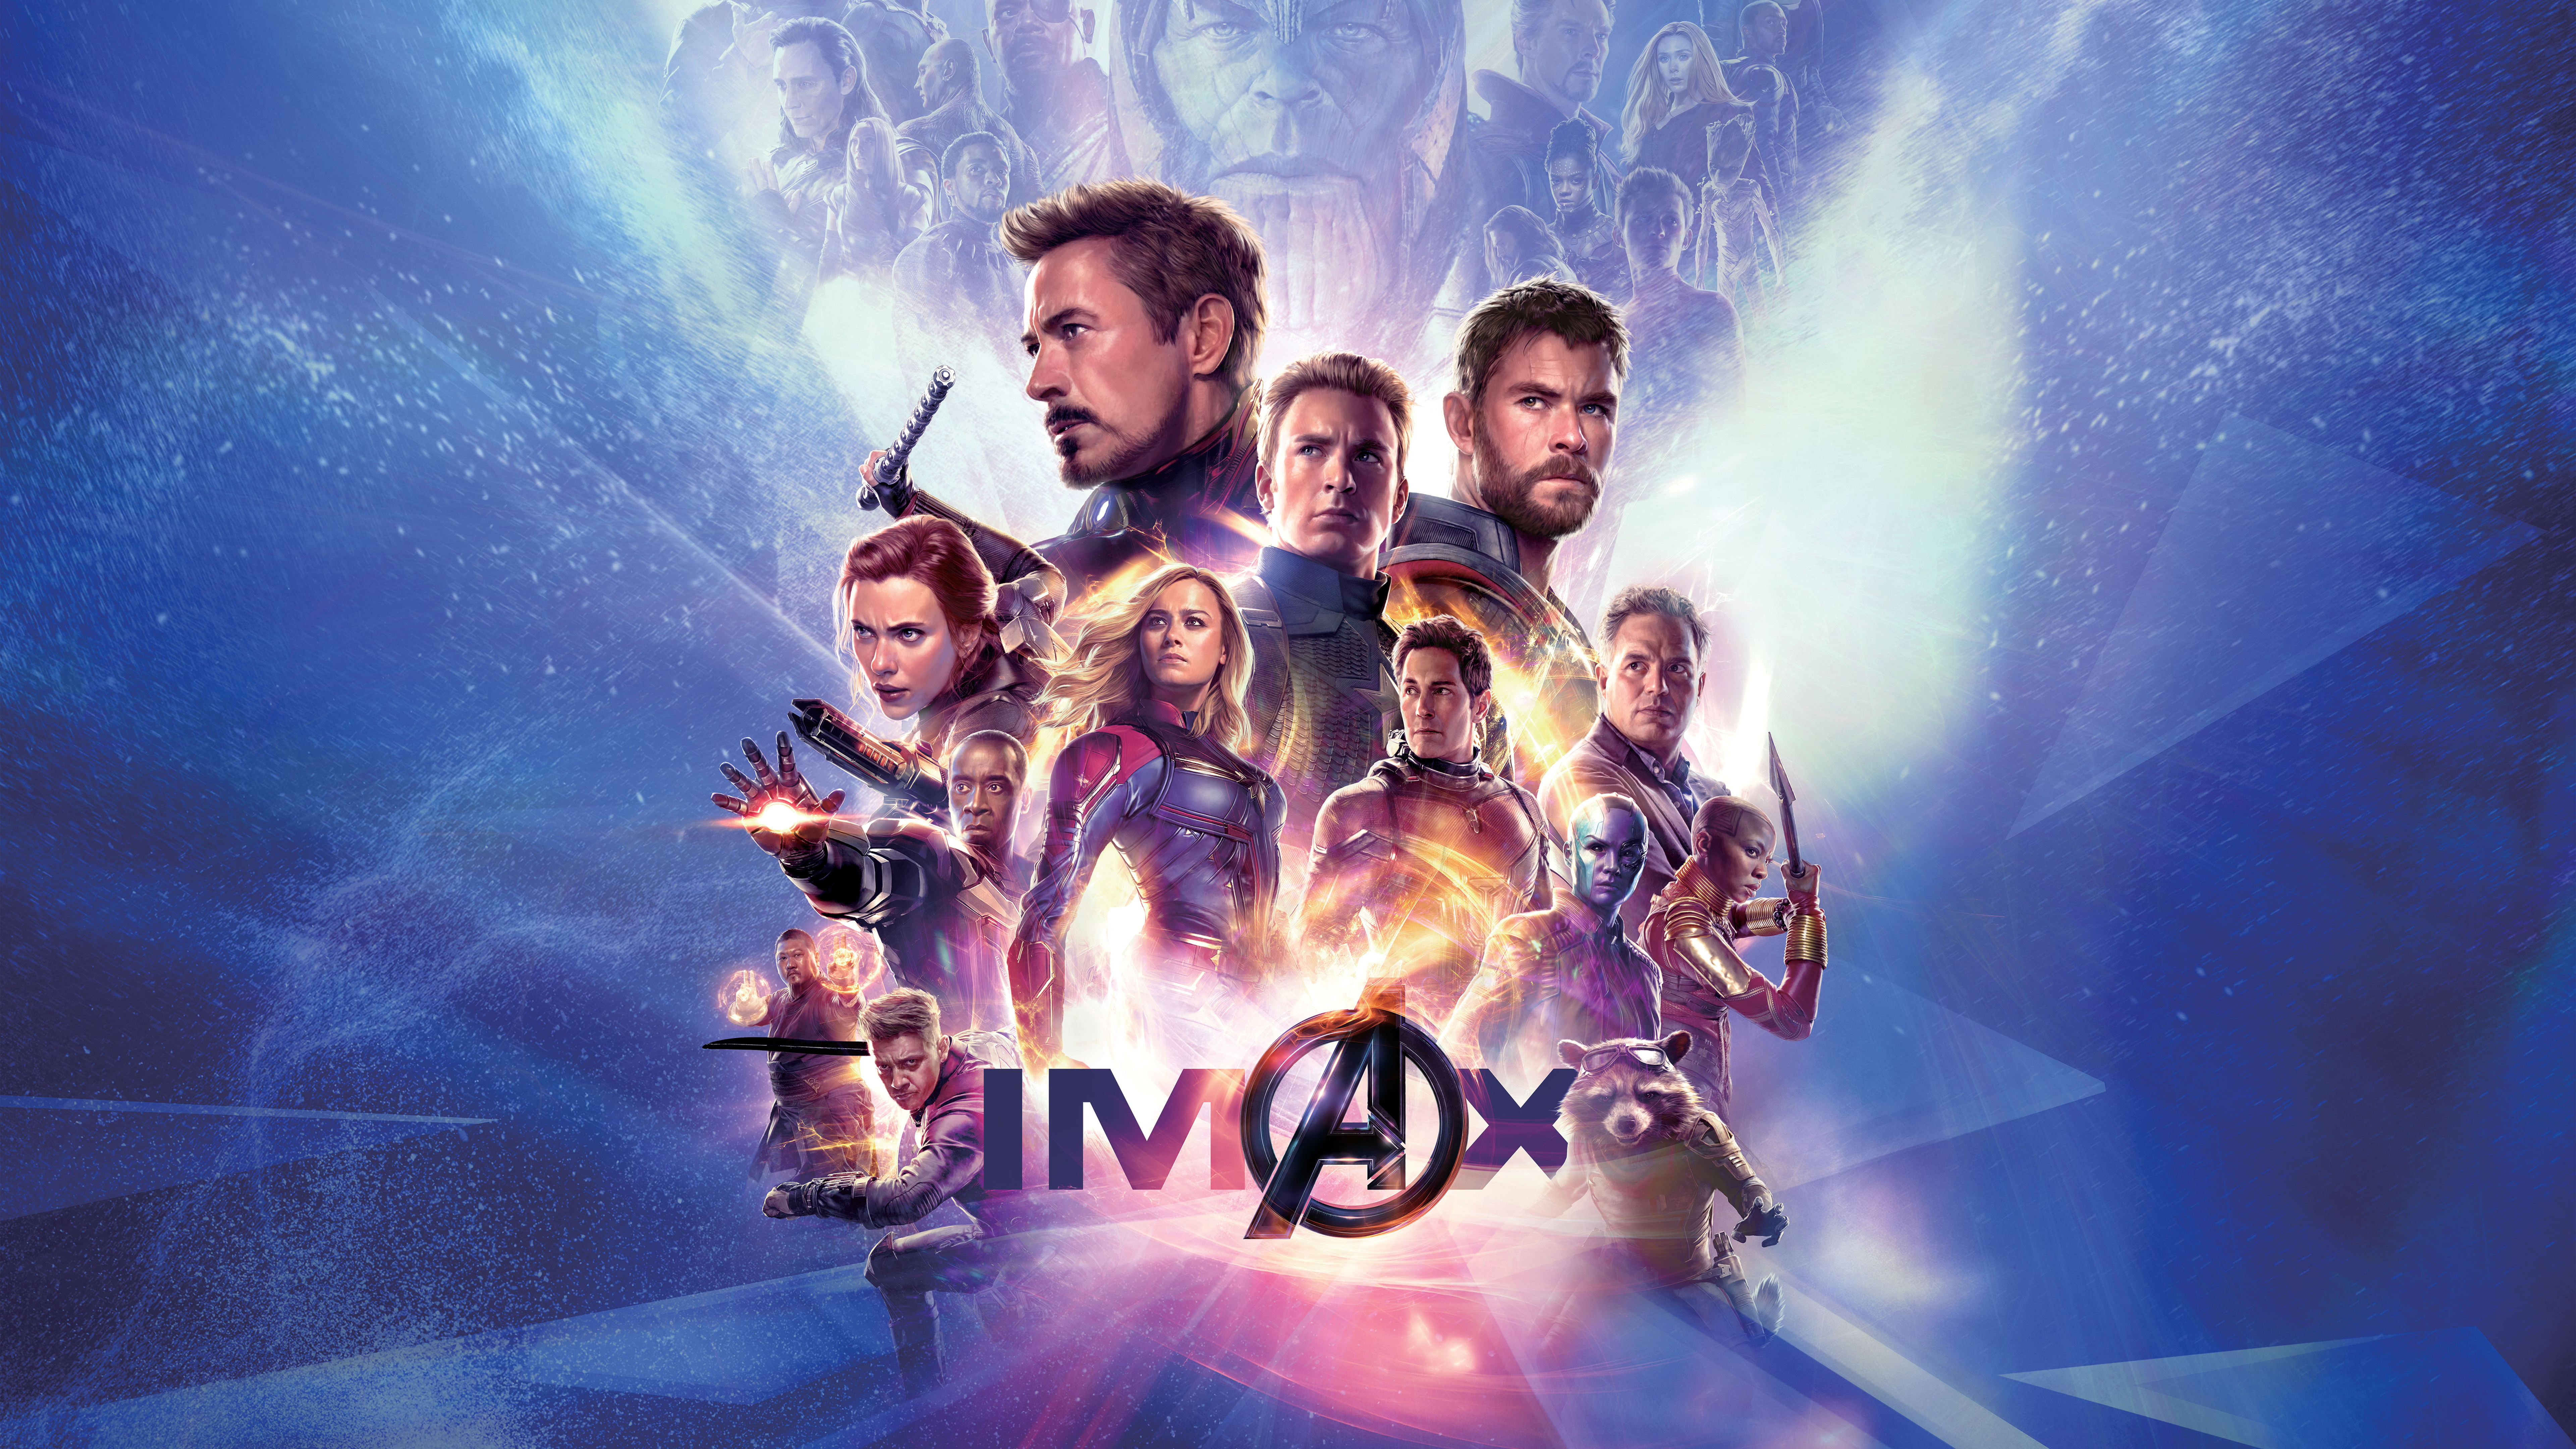 Avengers Endgame IMAX Poster 4K 8K